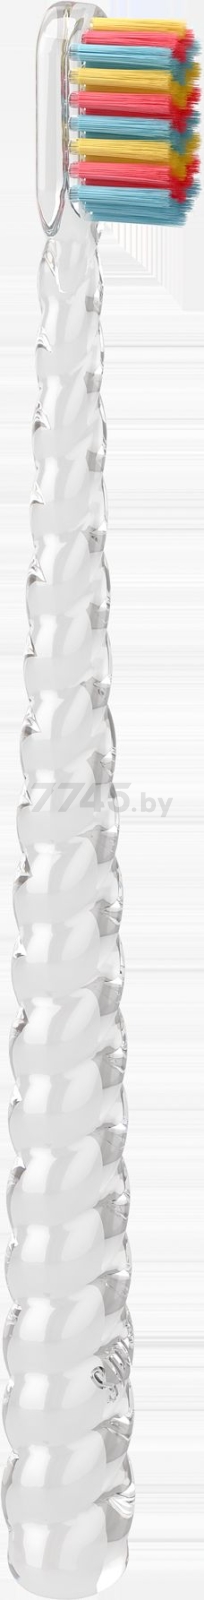 Зубная щетка детская SPLAT Juicy LAB Магия единорога прозрачная (9591050950) - Фото 4